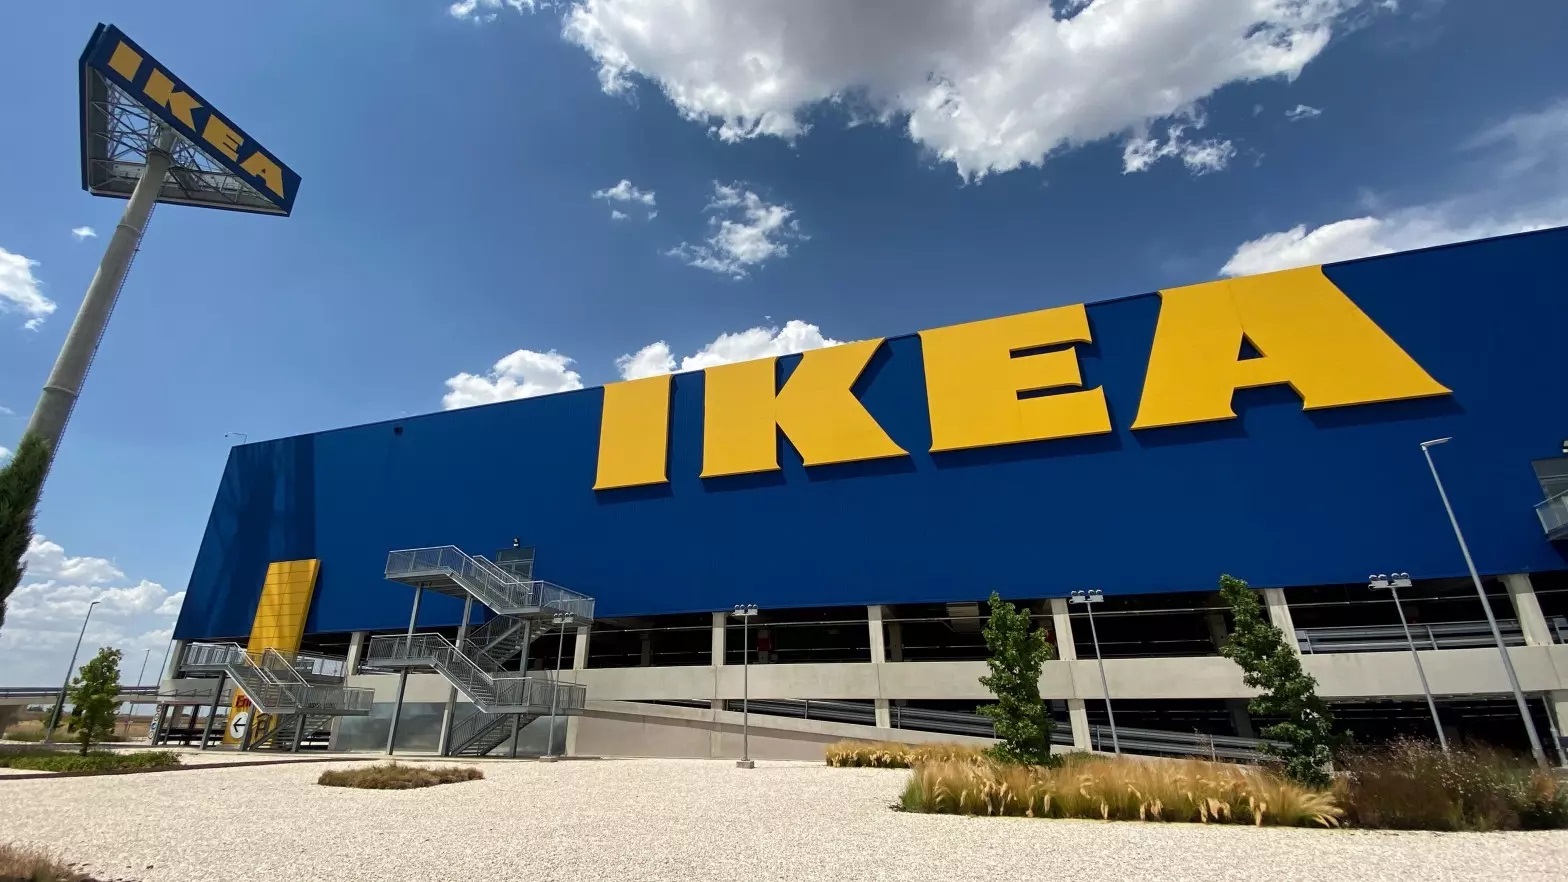 Es lo más vendido de Ikea para decorar el jardín de tu casa este verano